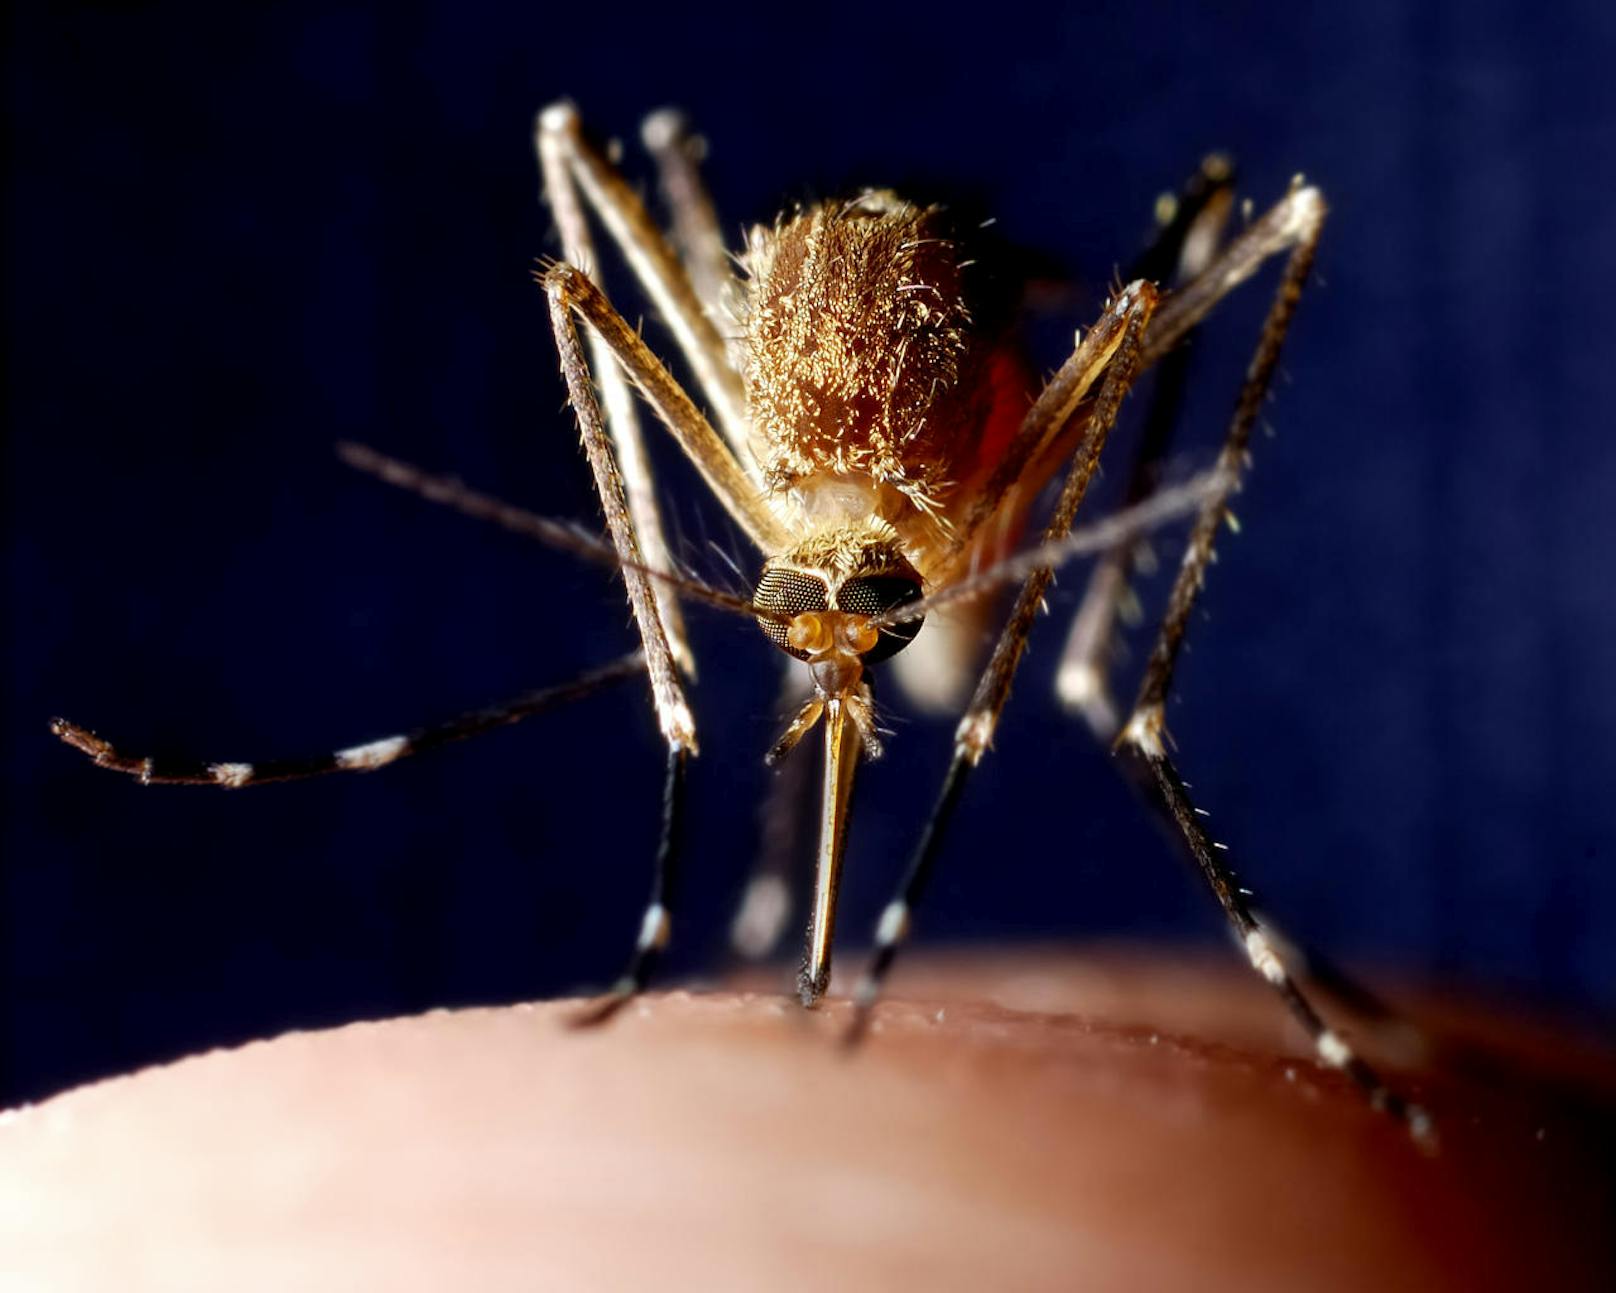 Dann sucht die Mücke mit einer Art Rüssel ein Blutgefäss. Rezeptoren an dessen Ende weisen den Weg, indem sie die Chemikalien der Blutgefässe erschnüffeln. Durch diesen Rüssel saugt die Mücke dann auch das Blut an.